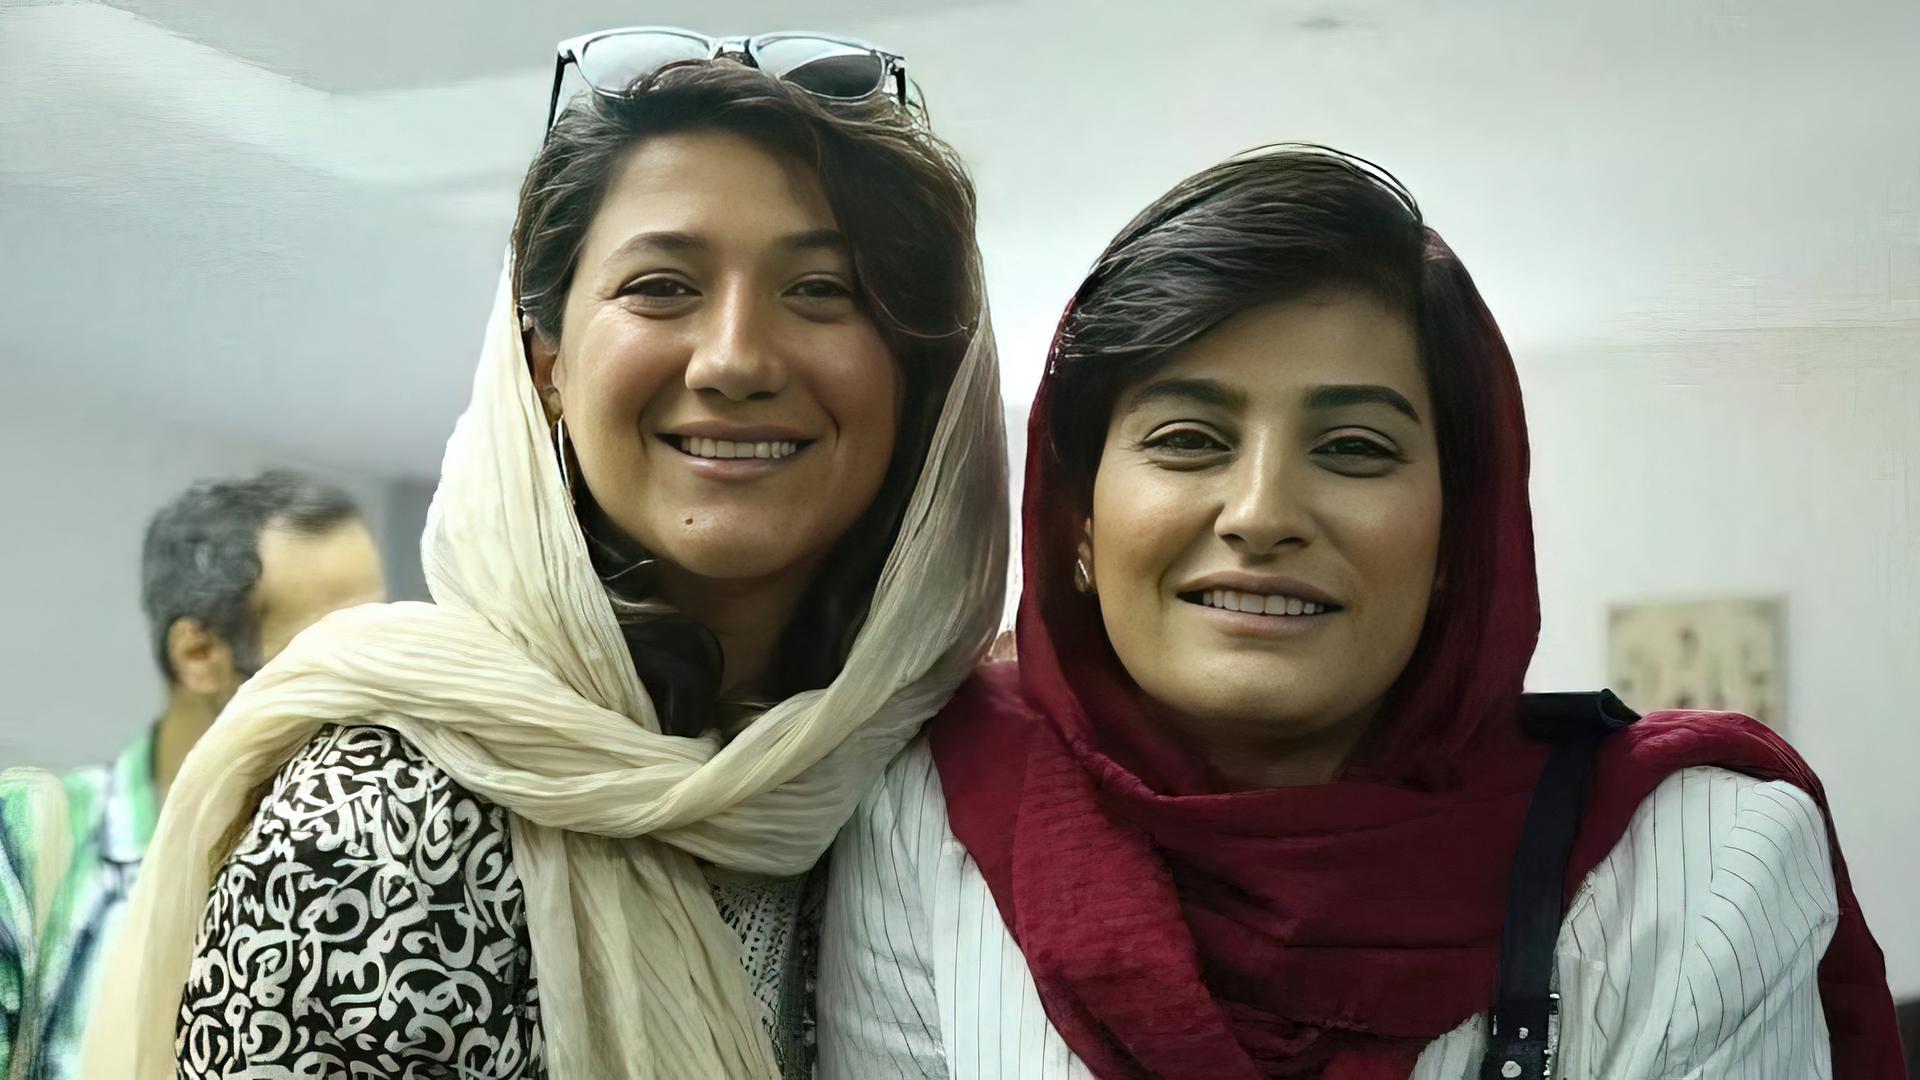 Zwei junge Frauen mit Kopftuch - die Journalistinnen Niloofar Hamedi (li) und Elahe Mohammad (re) - sie haben den Fall der Kurdin Jina Mahsa Amini publik gemacht. Nun sind beide im Teheraner Evin-Gefängnis in Haft